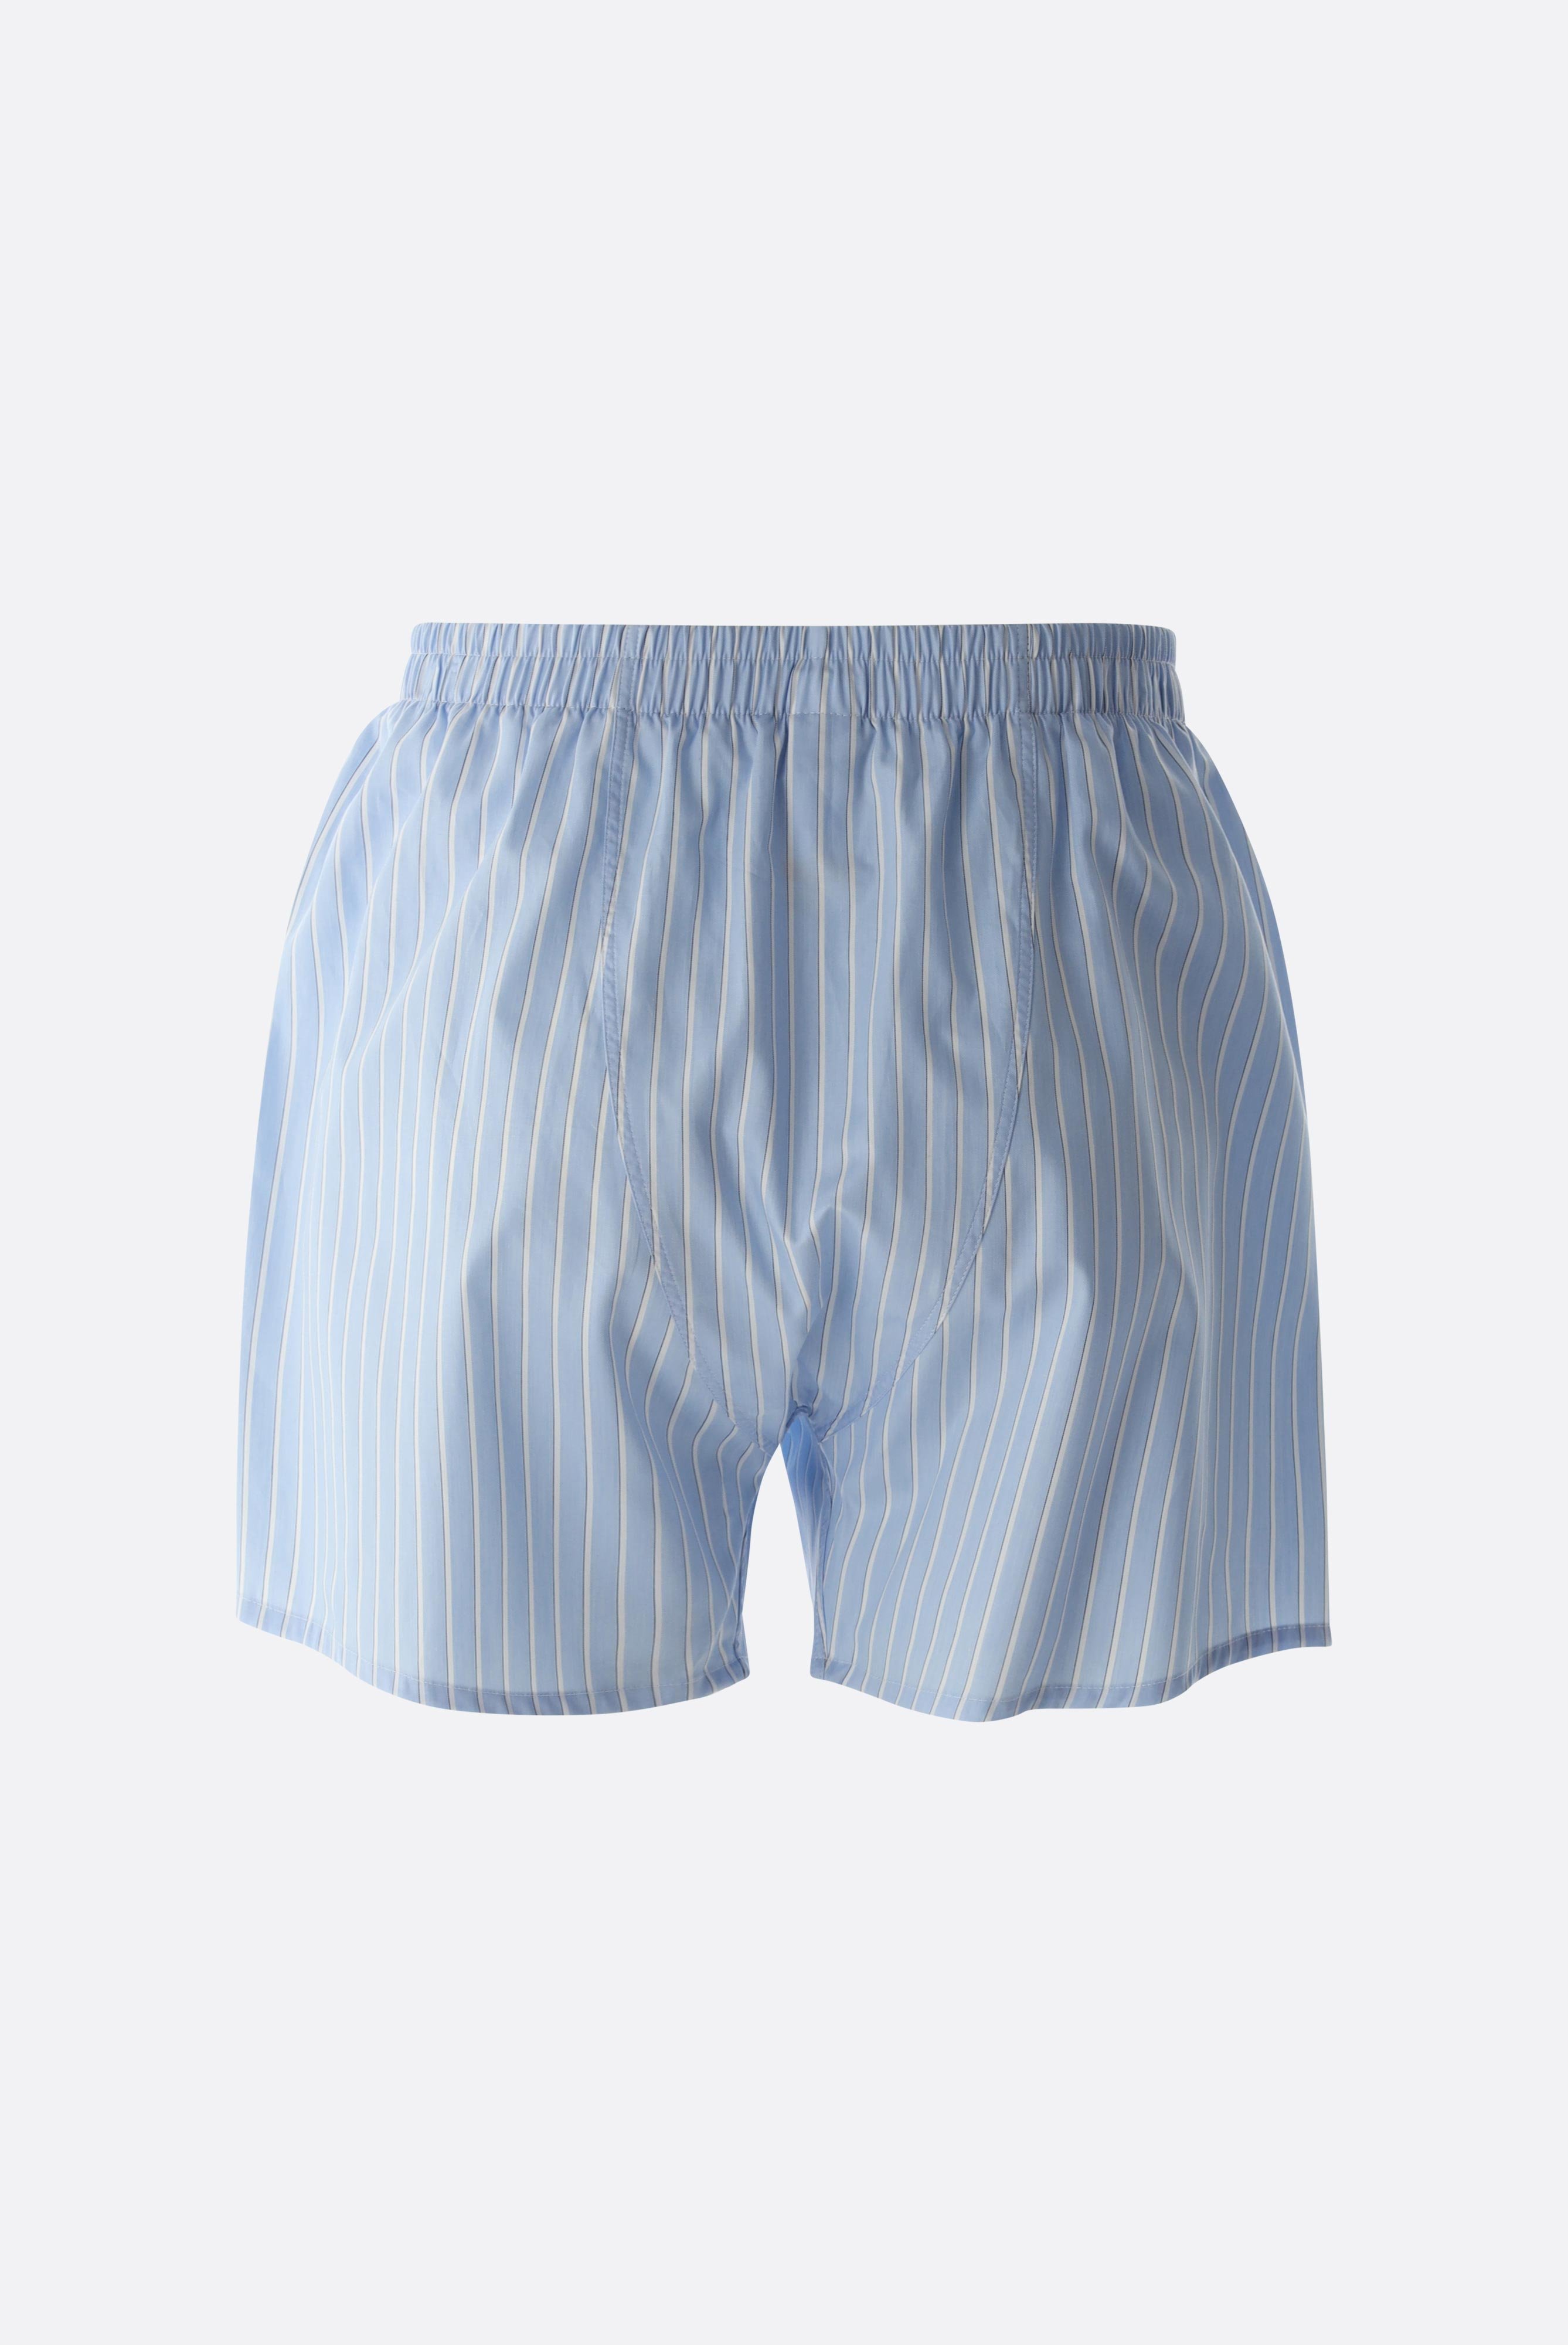 Underwear+Striped Twill Boxershorts+91.1100..151341.737.46